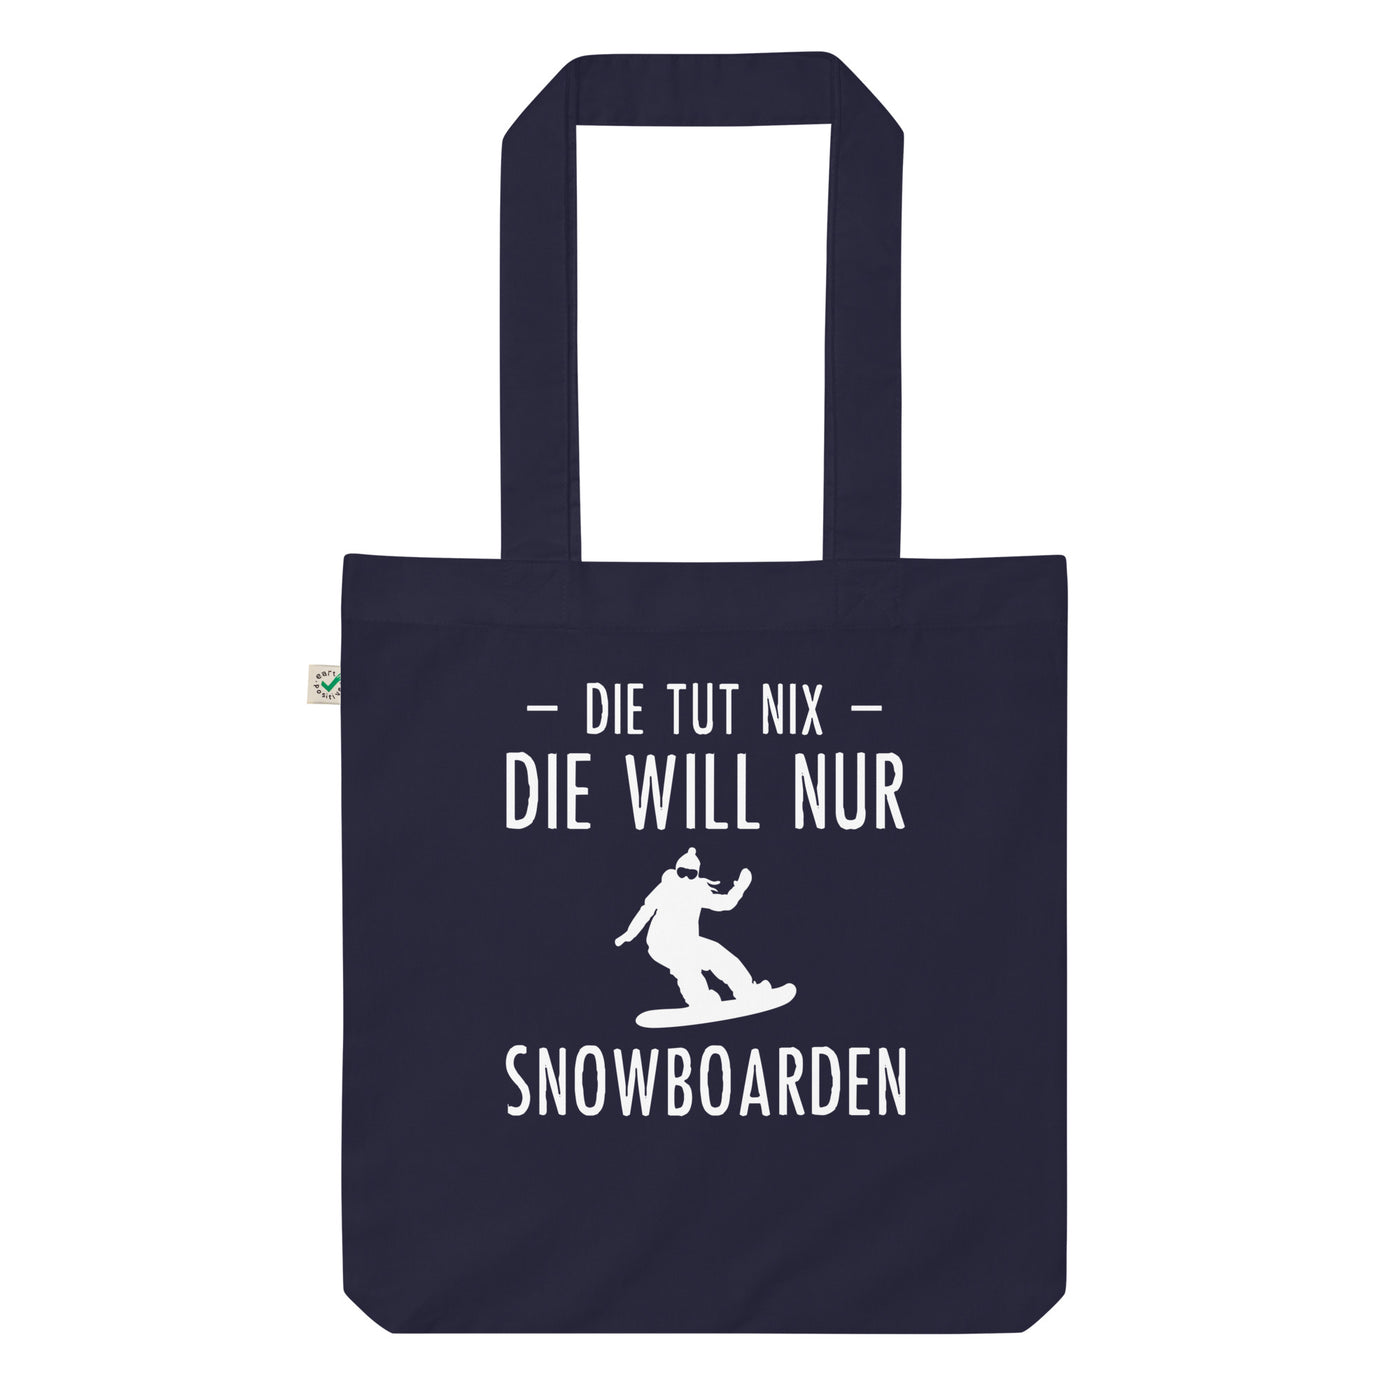 Die Tut Nix Die Will Nur Snowboarden - Organic Einkaufstasche snowboarden